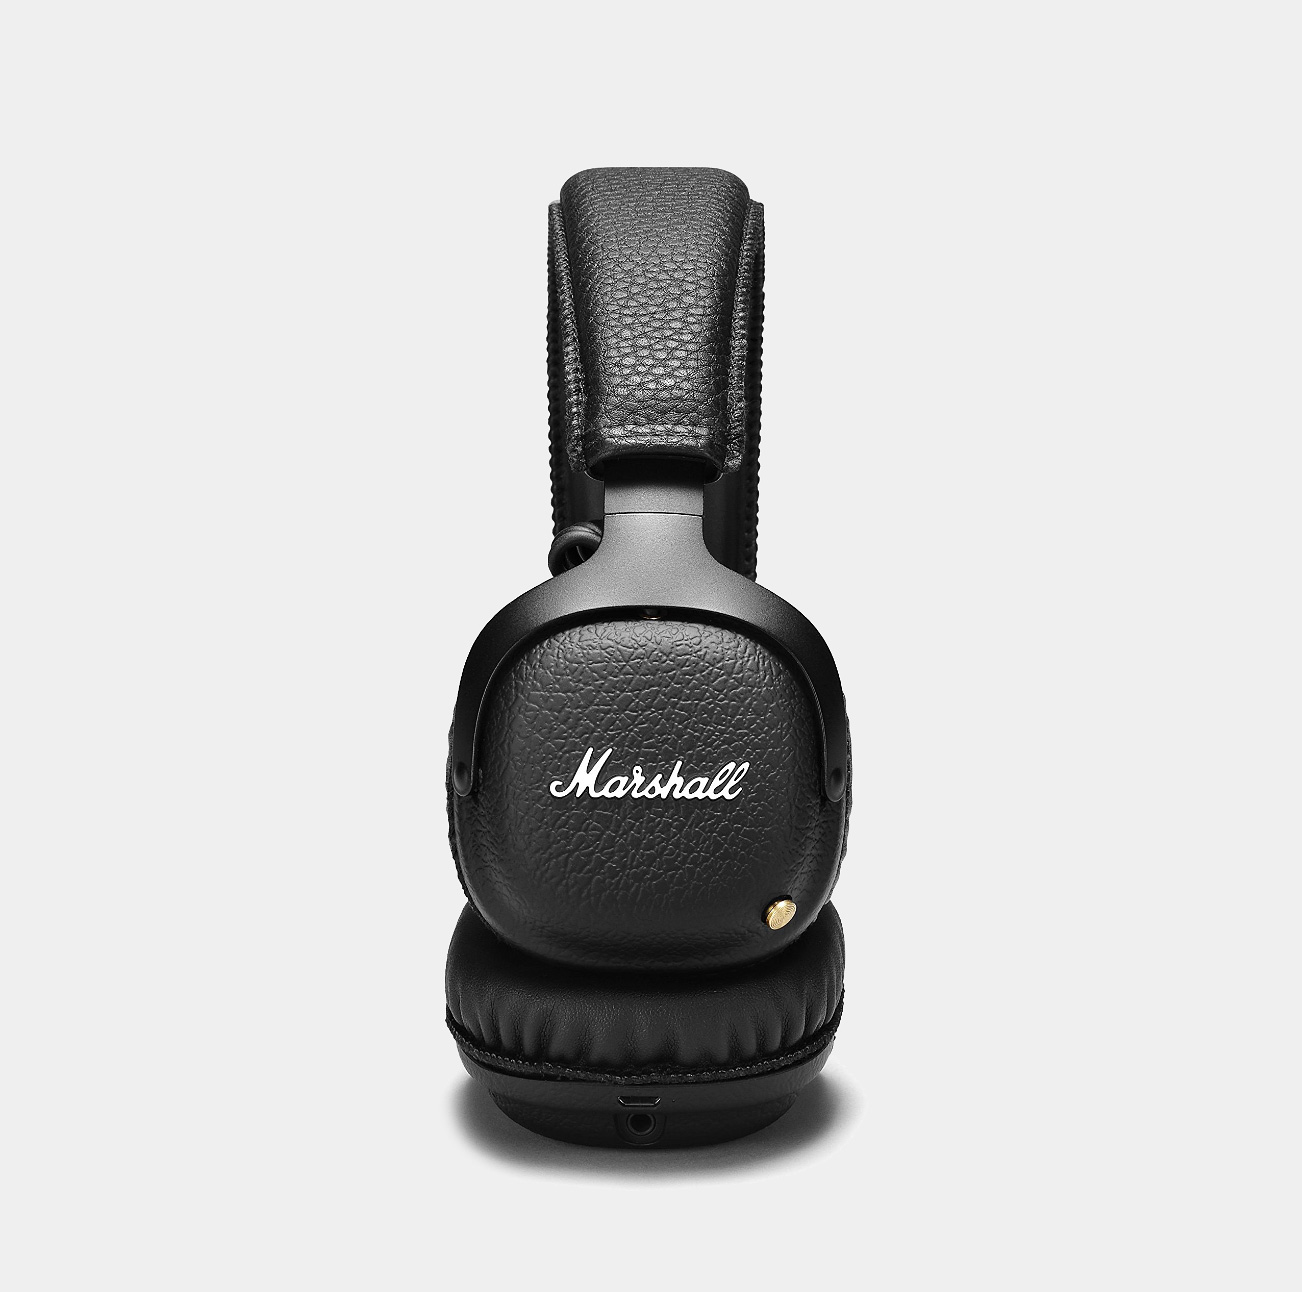 Marshall Lifestyle Major III Bluetooth Headphones (Black)